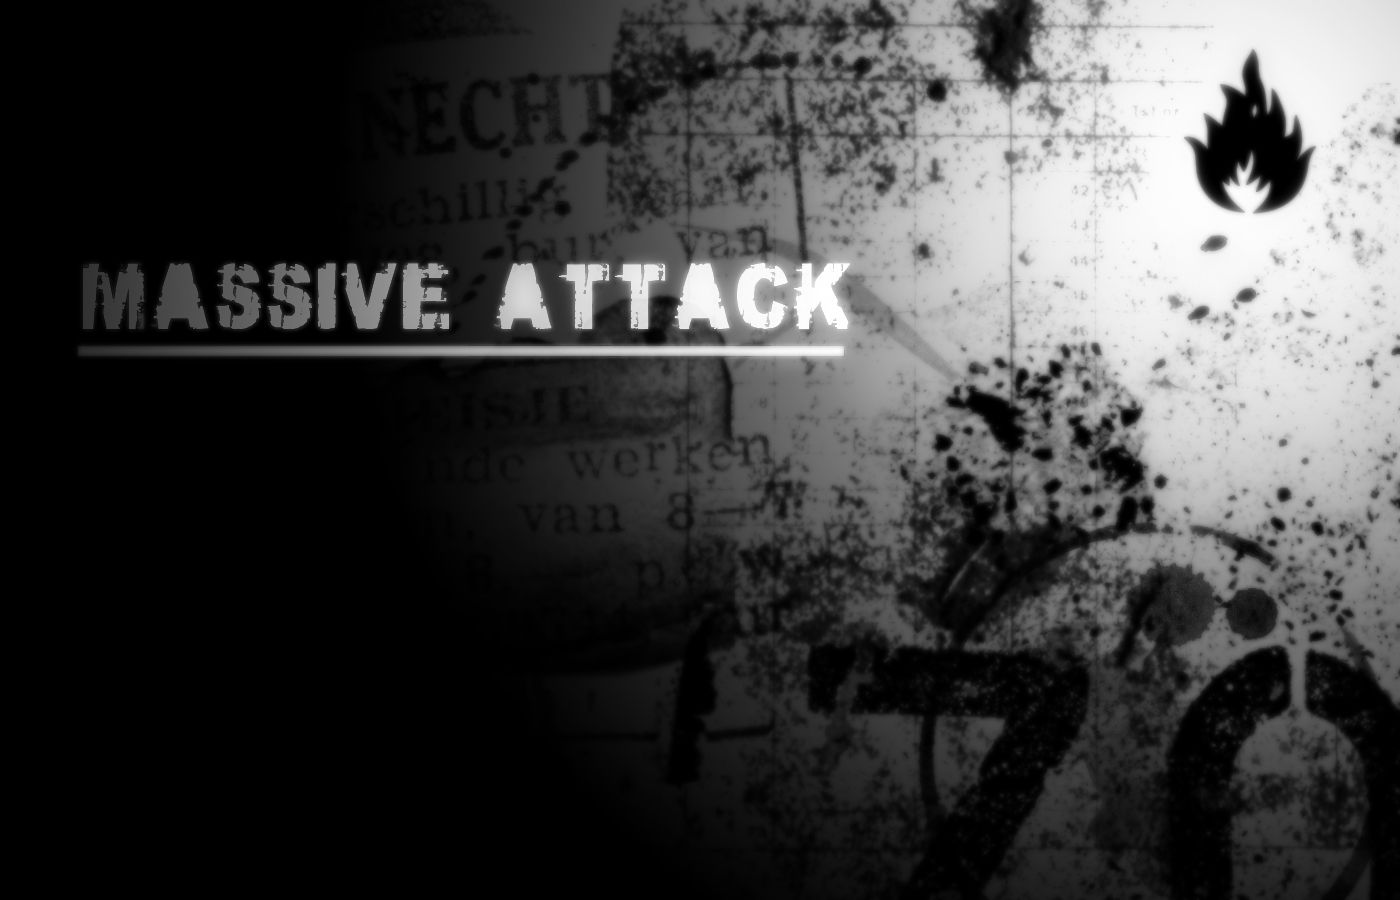 Massive Attack Wallpaper. Attack On Titan Wallpaper Anime, Shark Attack Wallpaper and Attack On Titan Wallpaper